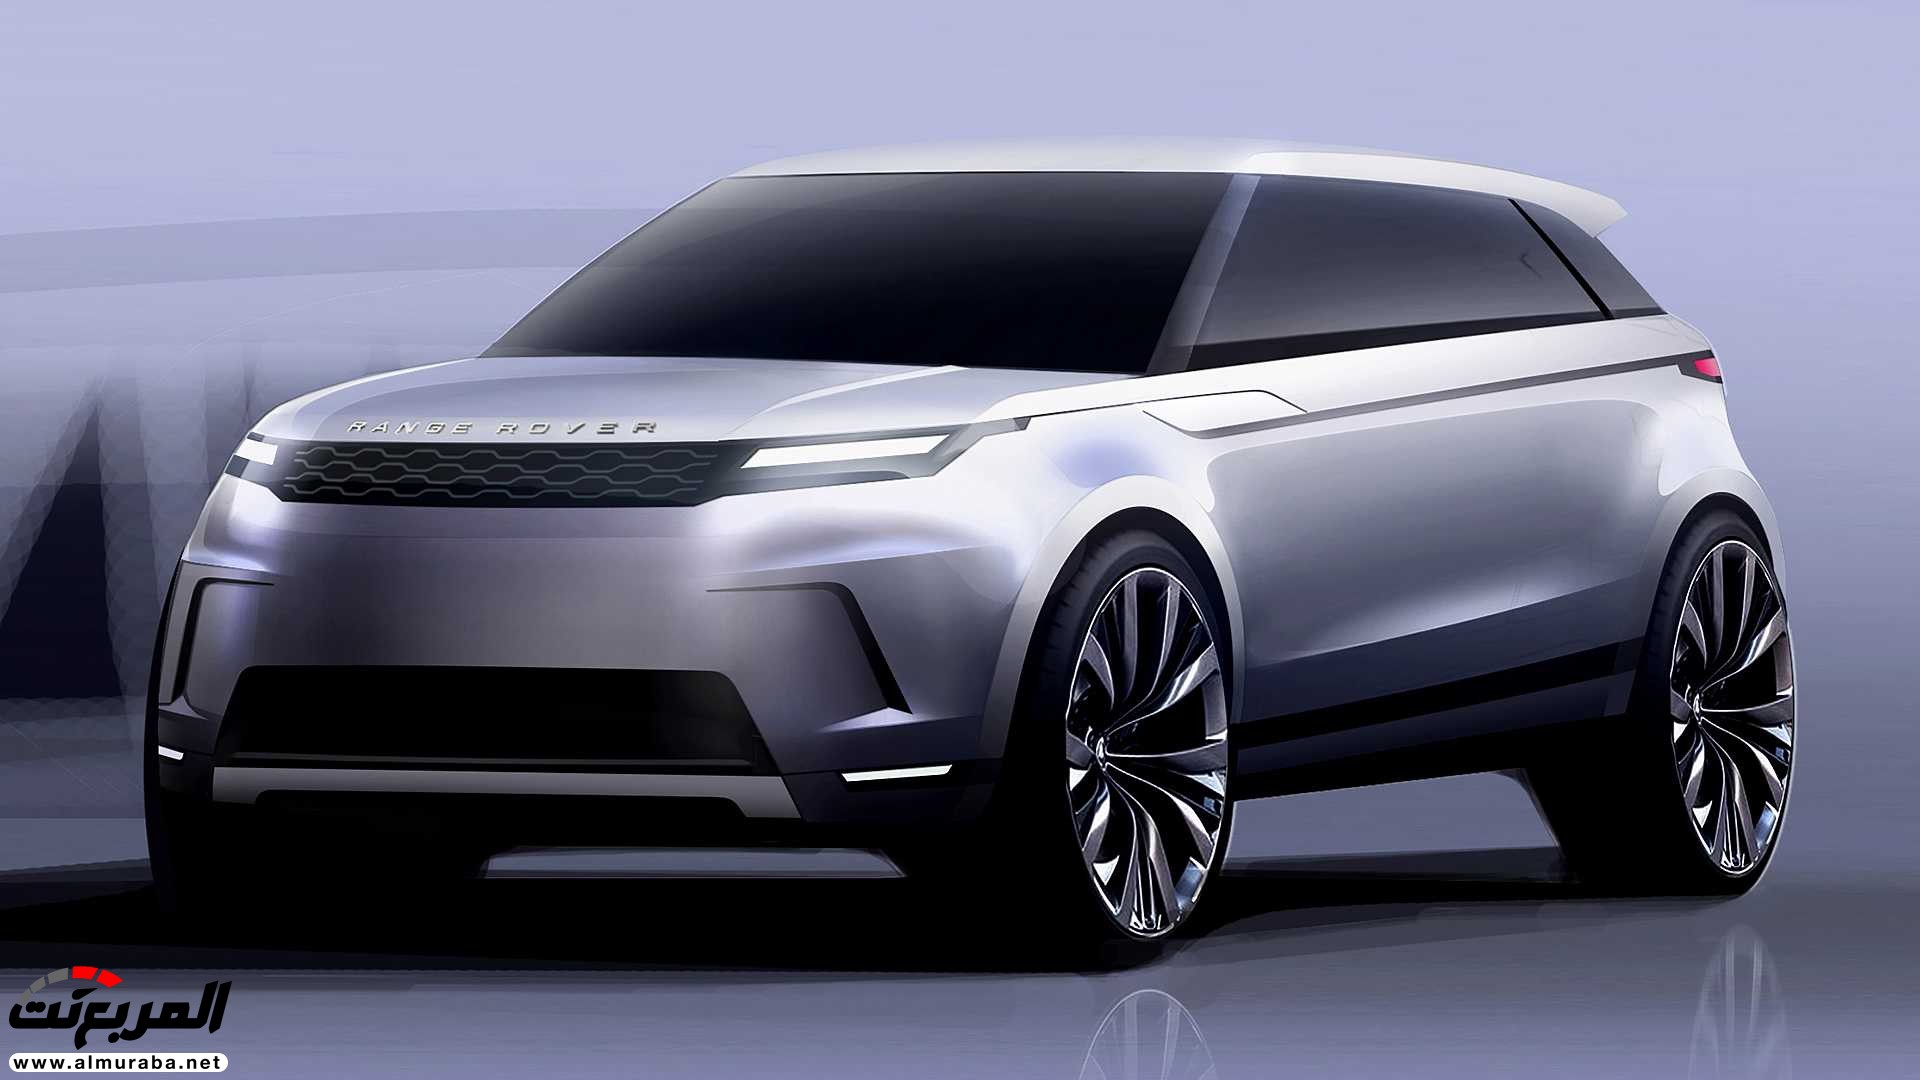 اهم 7 معلومات عن رنج روفر ايفوك 2020 الجديدة كلياً Range Rover Evoque 354